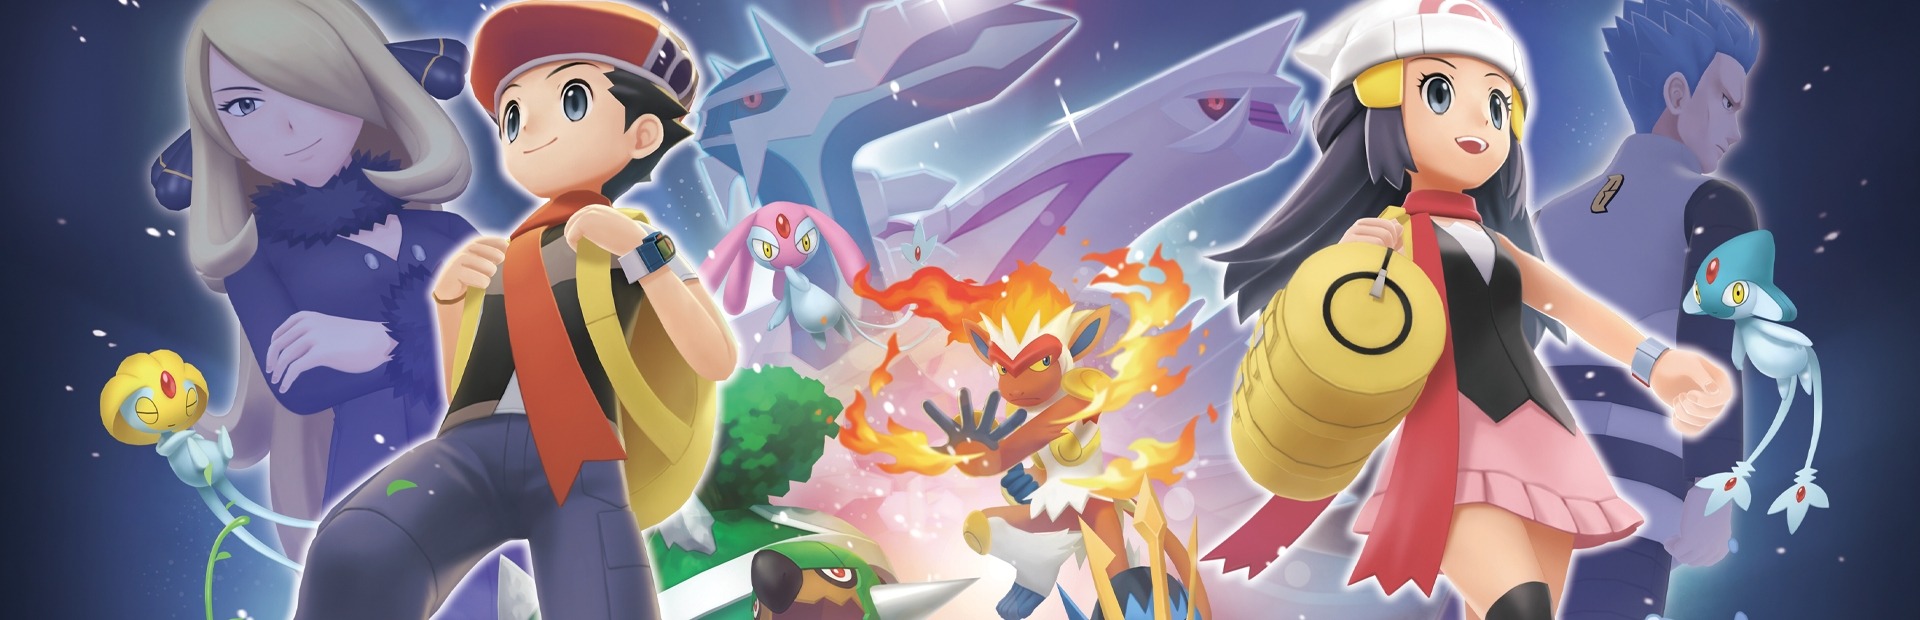 Banner Pokémon Perla Reluciente Switch